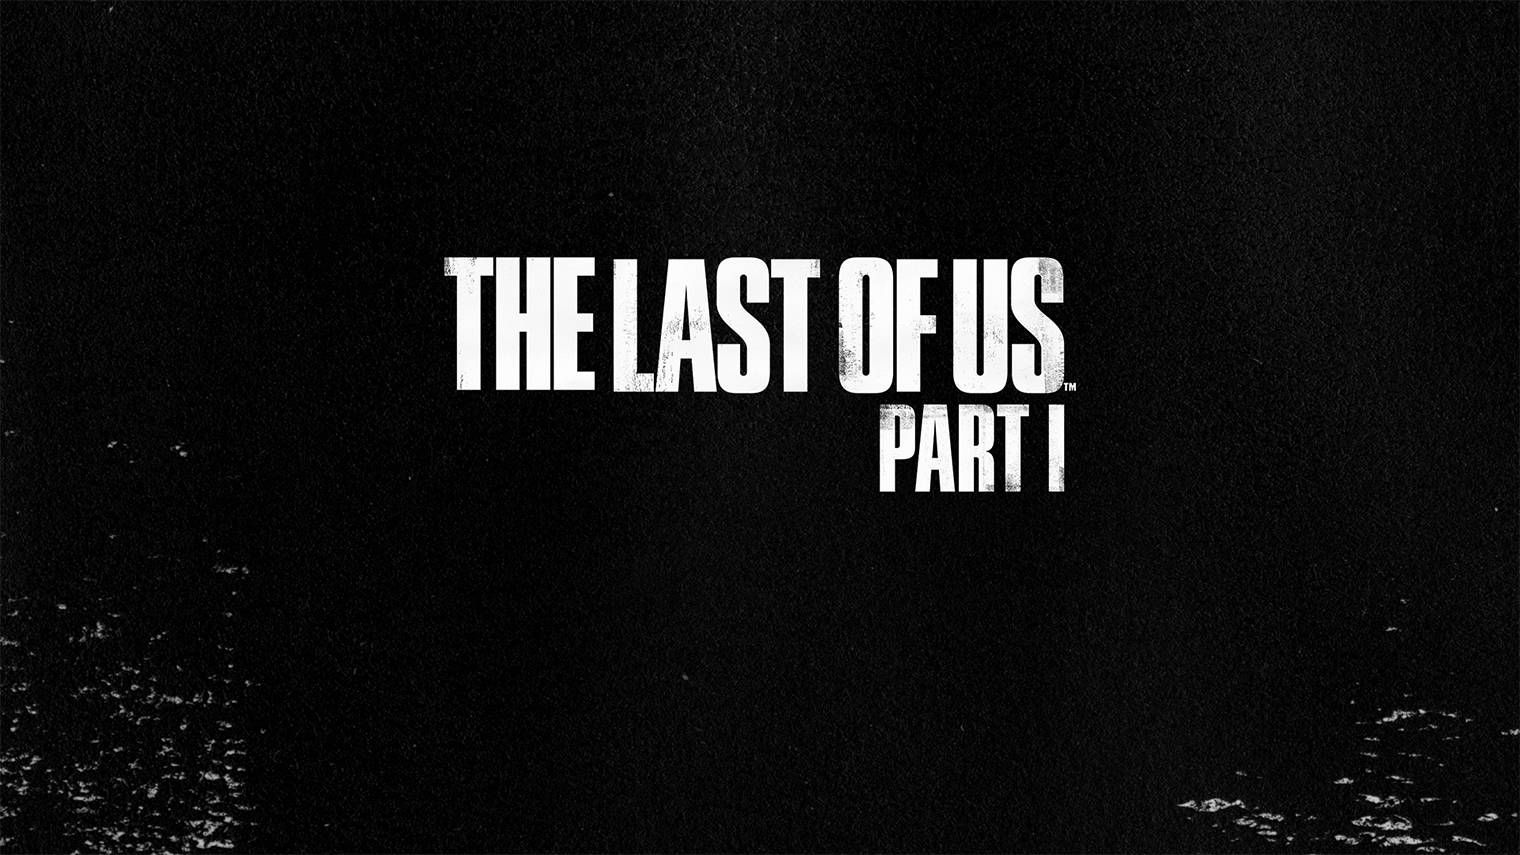 Логотип серии The Last of Us. Студия Naughty Dog использует этот шрифт с 2012 года, когда впервые представила свою игру. Источник: Sony Interactive Entertainment